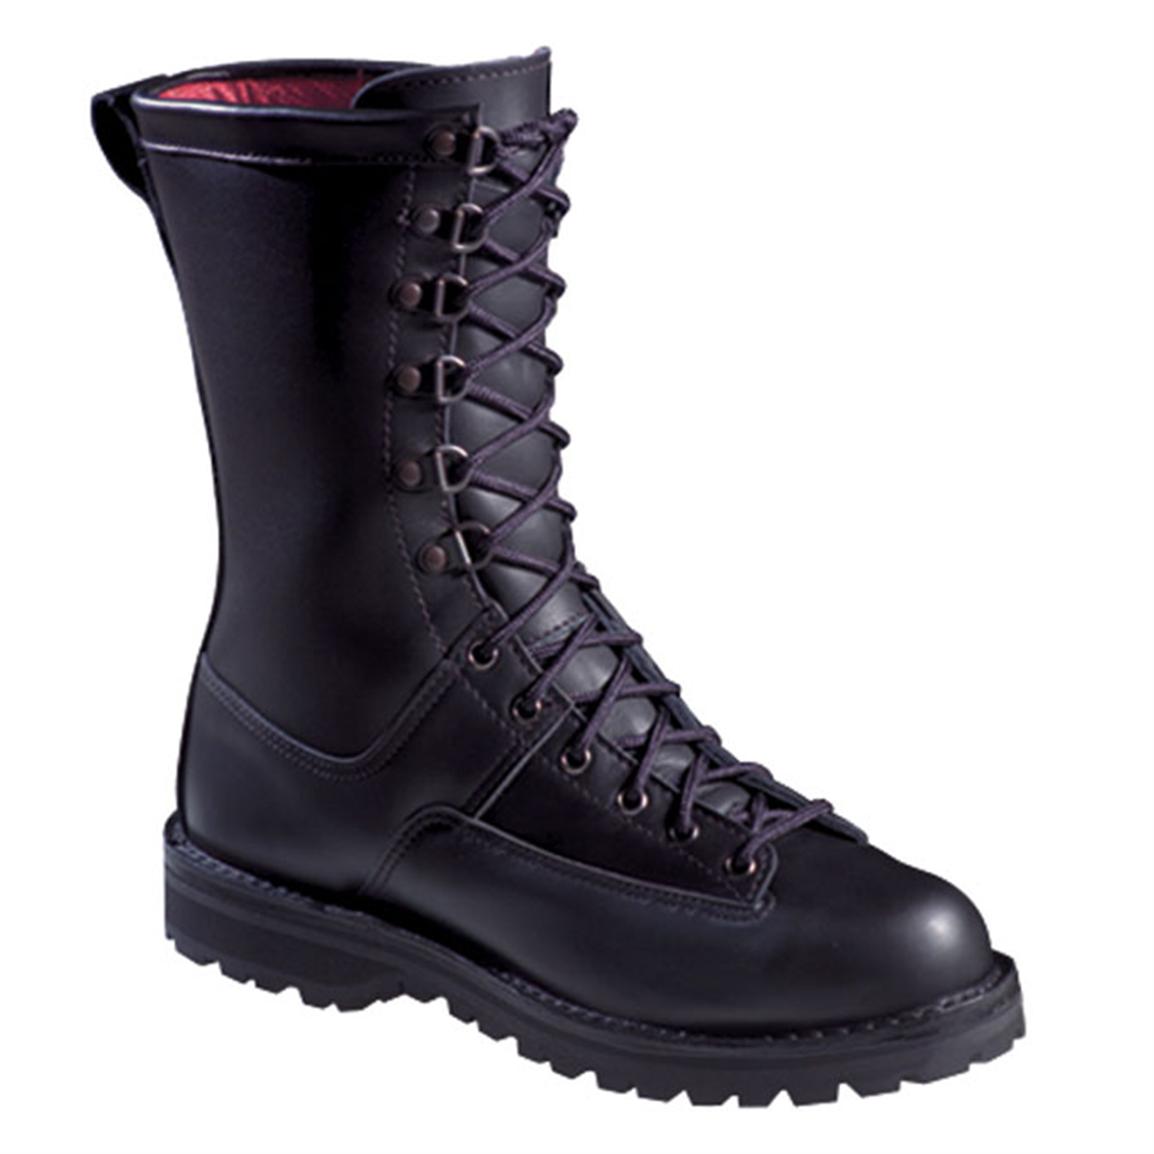 Men's or Women's Danner Elite Series Fort Lewis 200 gram 10" Combat Boots, Black